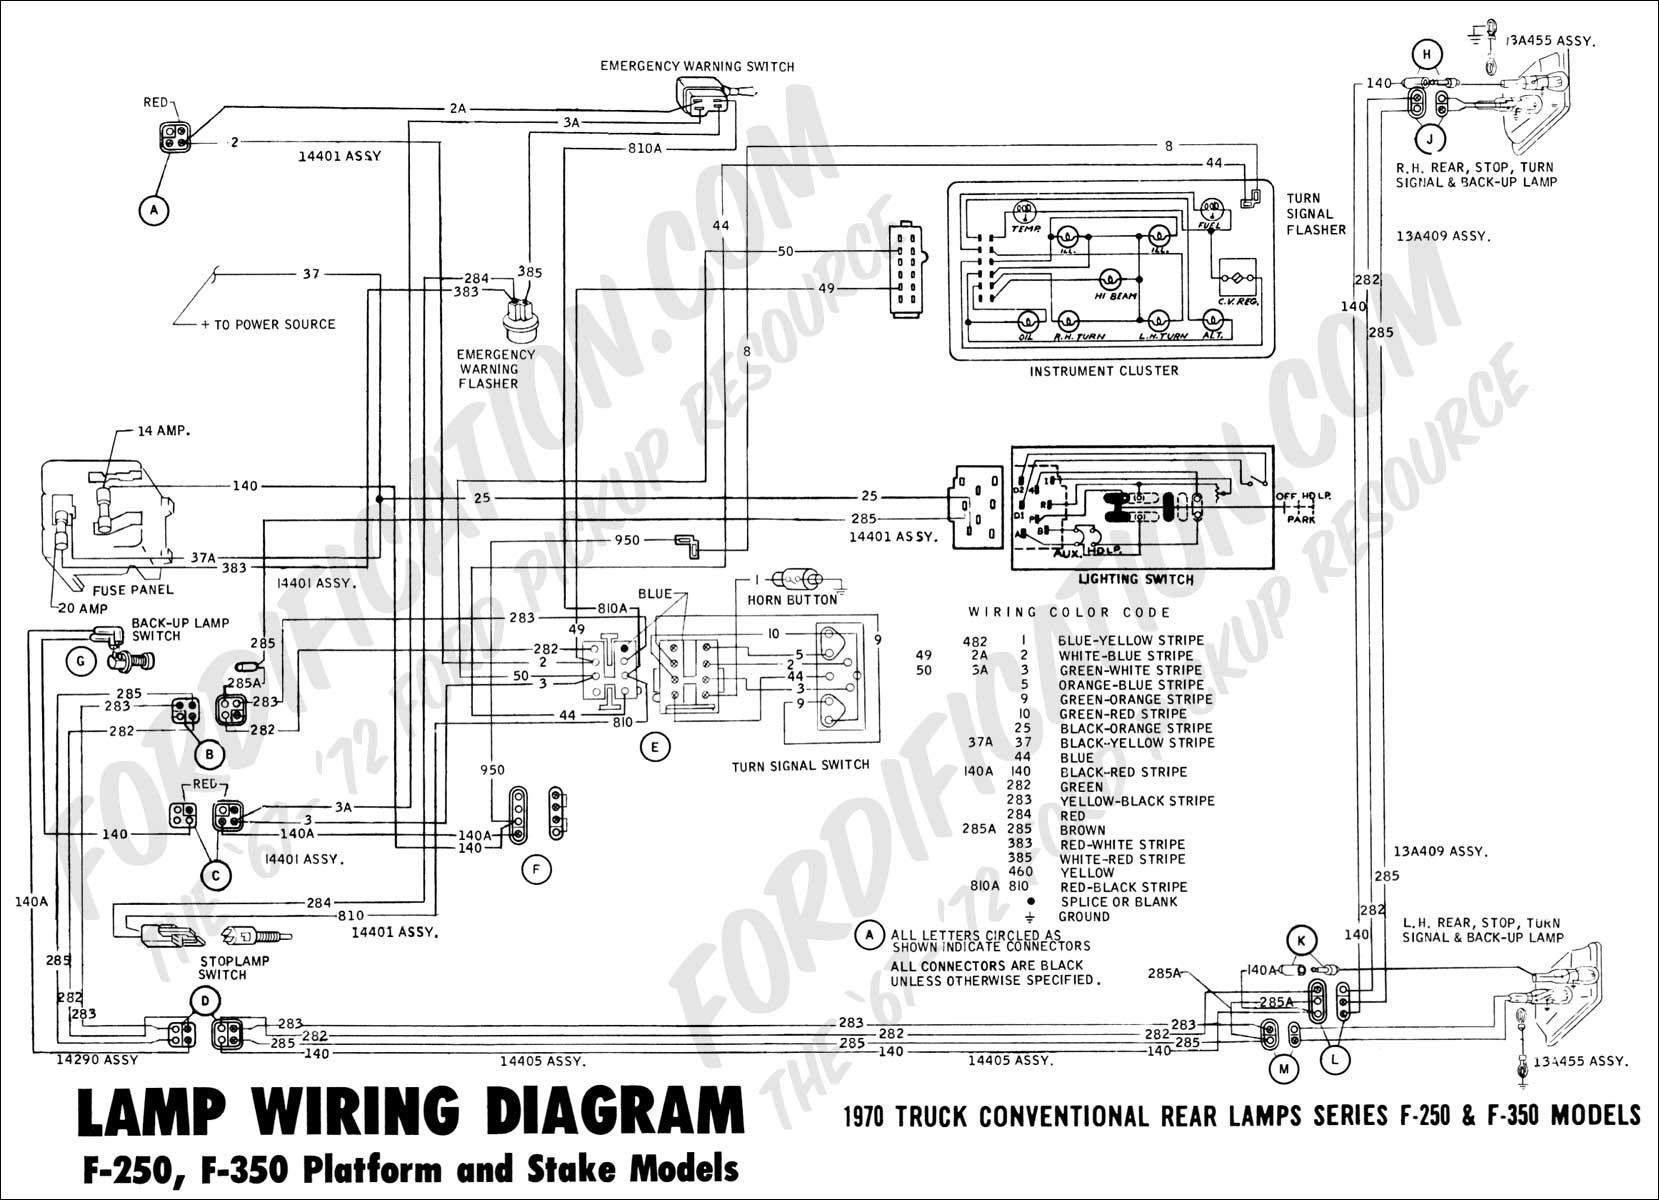 1997 f150 tail lights wiring diagram wire center u2022 rh ayseesra co 1997 Ford F 150 4x4 Wiring Diagram 1997 Ford F 150 Radio Wiring Diagram